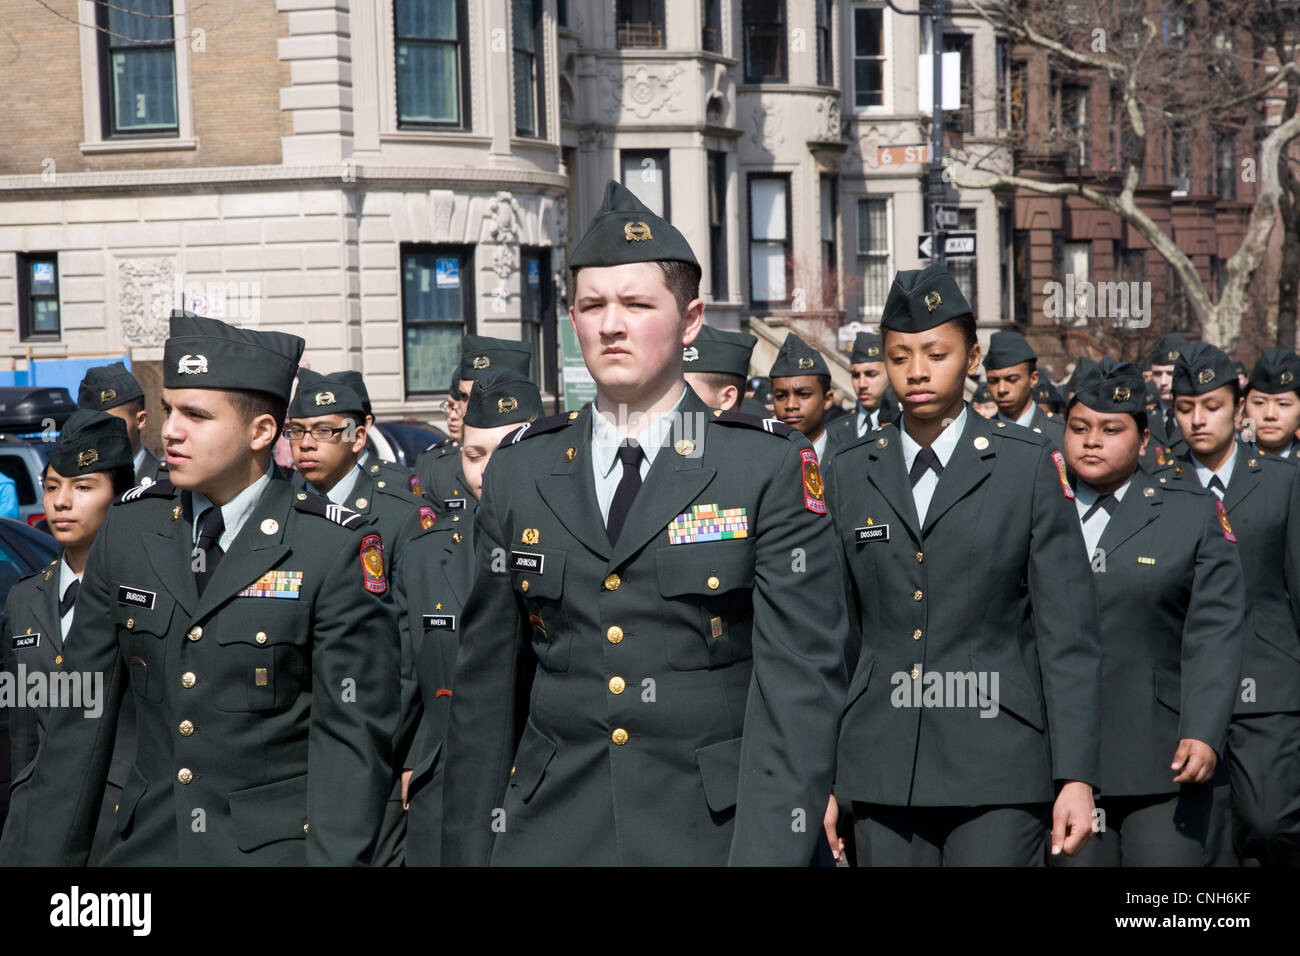 Les membres de l'Armée de l'école secondaire en mars le JROTC Parade irlandaise à Park Slope, Brooklyn, New York. Banque D'Images